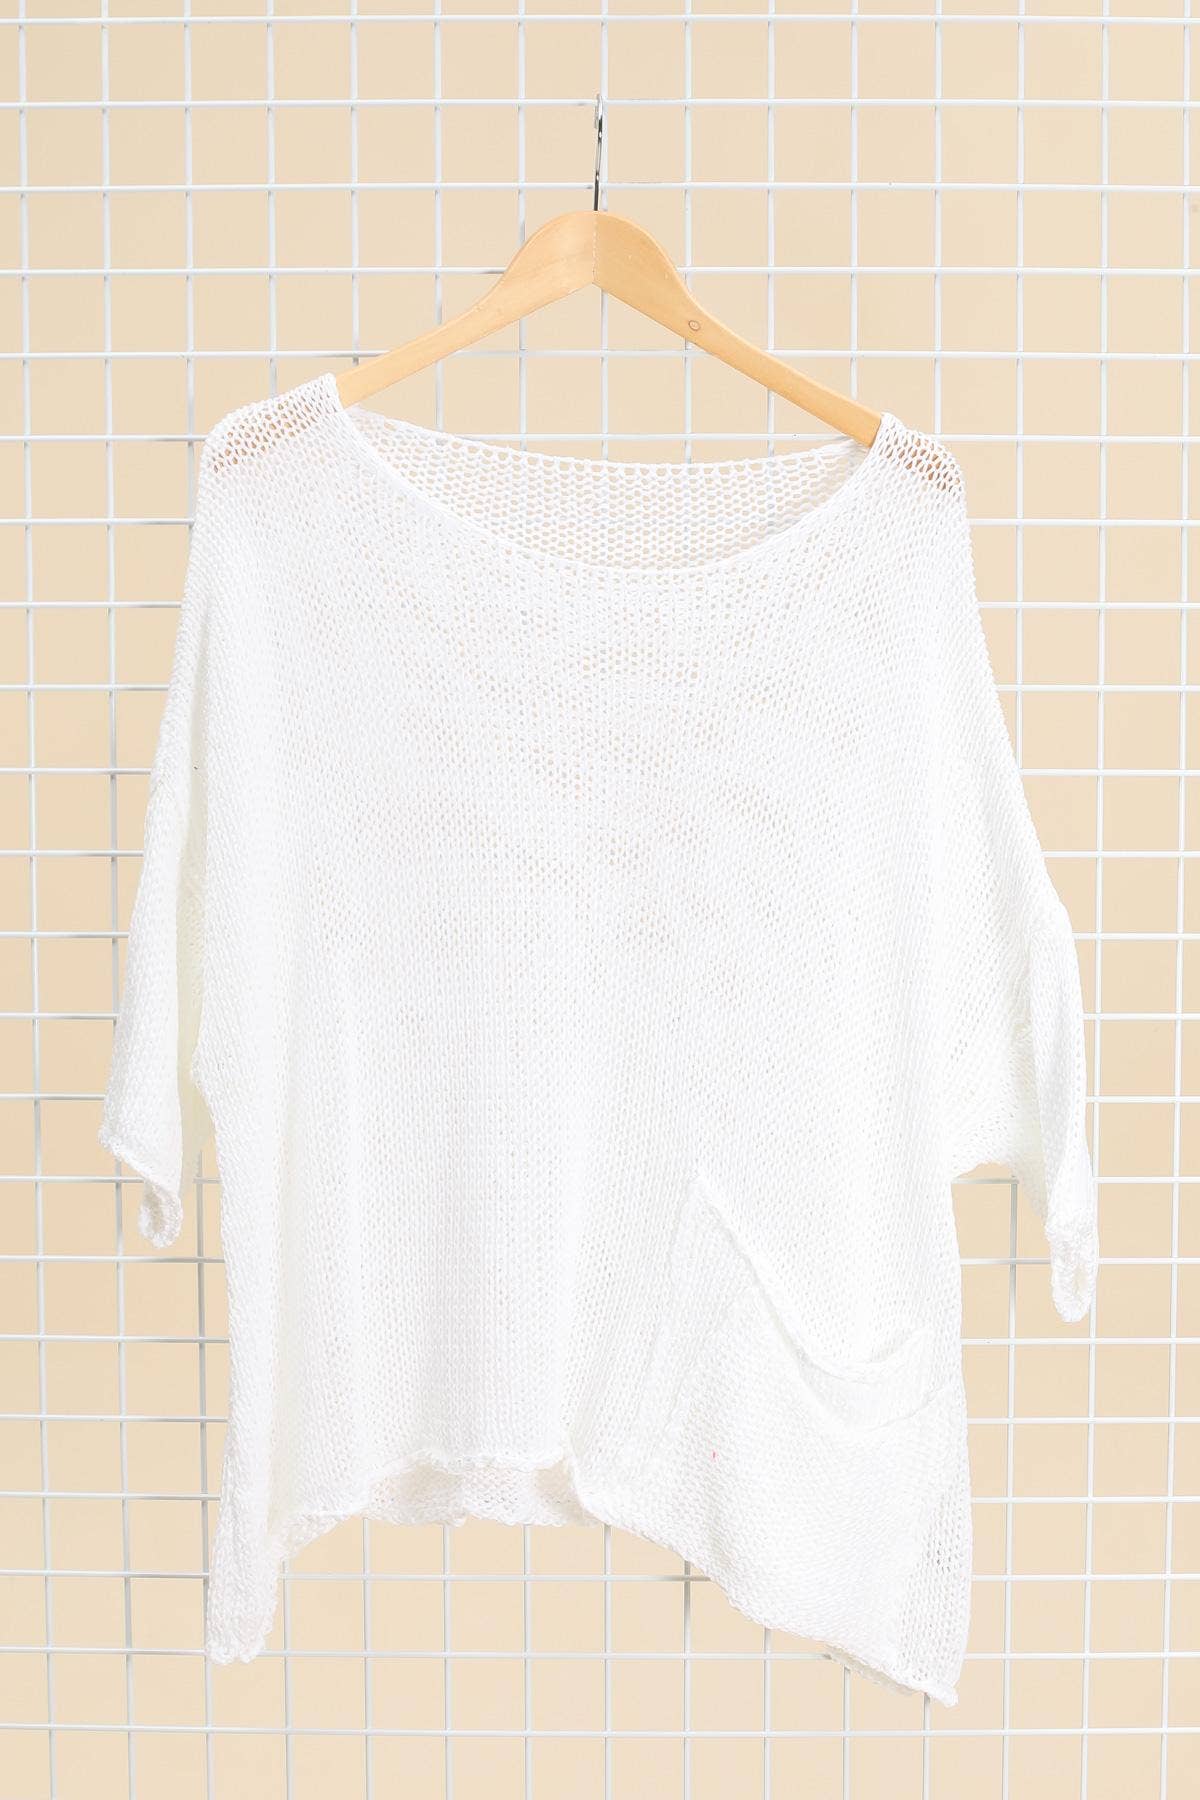 La Maison des Fibres Naturelles Cotton Sweater Top - Simple Good